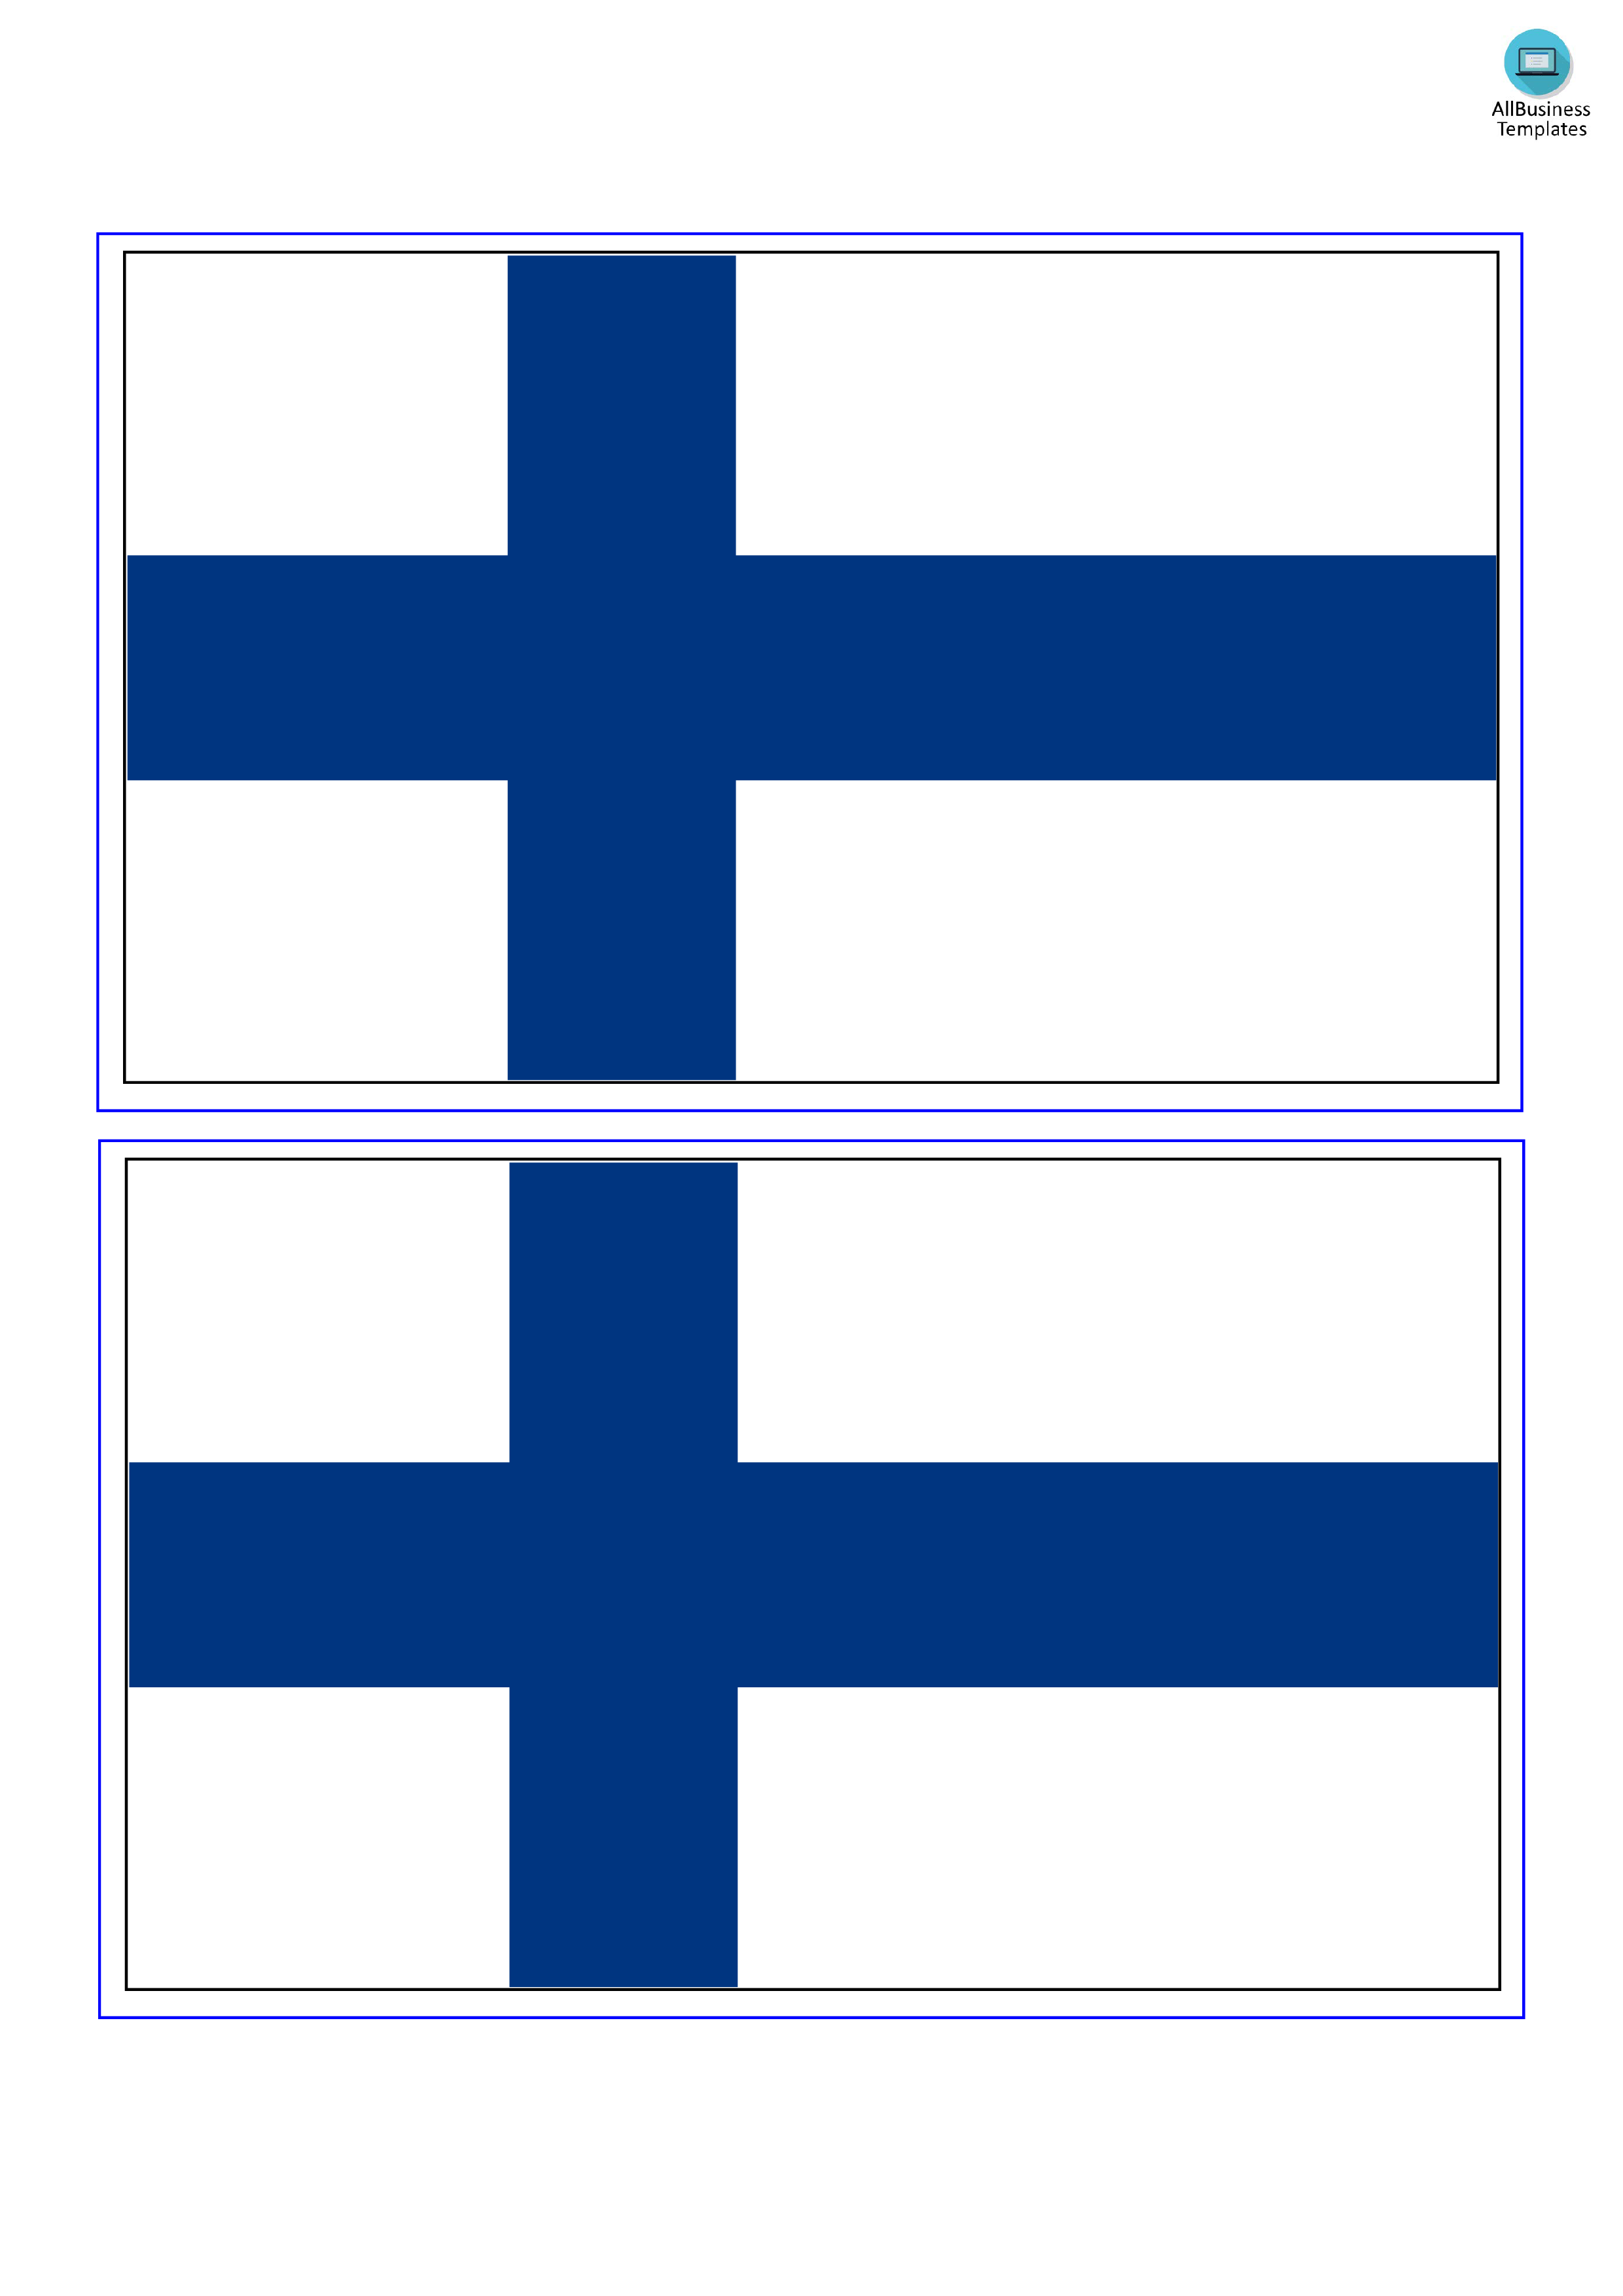 finland flag plantilla imagen principal